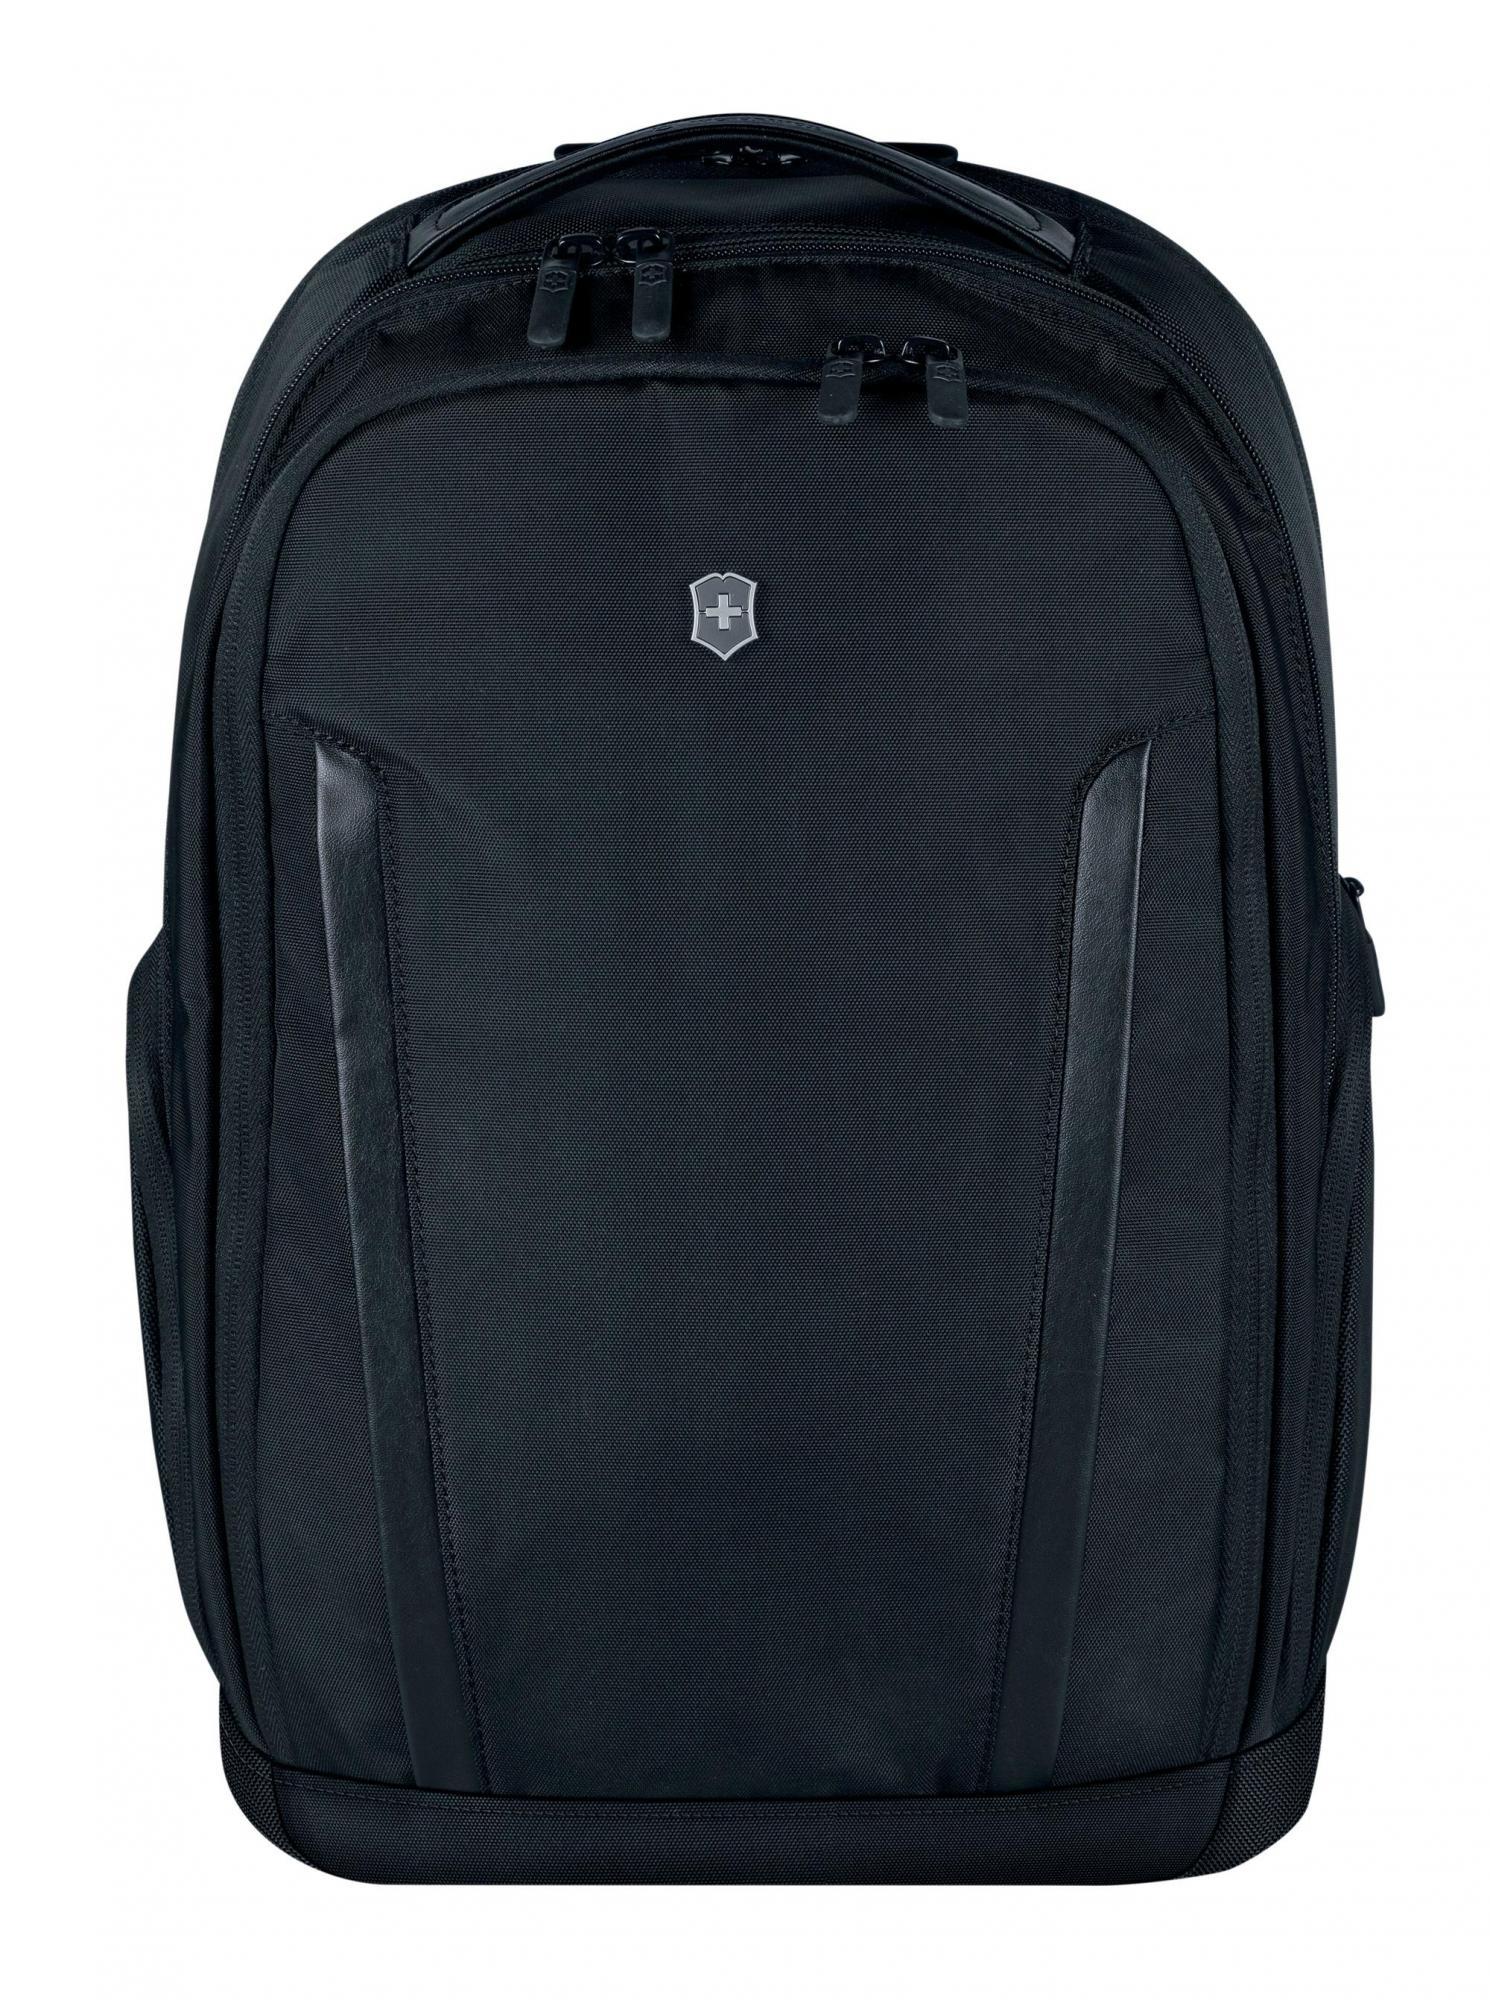 Reis kubus welvaart Victorinox Altmont Professional Essential Laptop Backpack – Luggage Pros